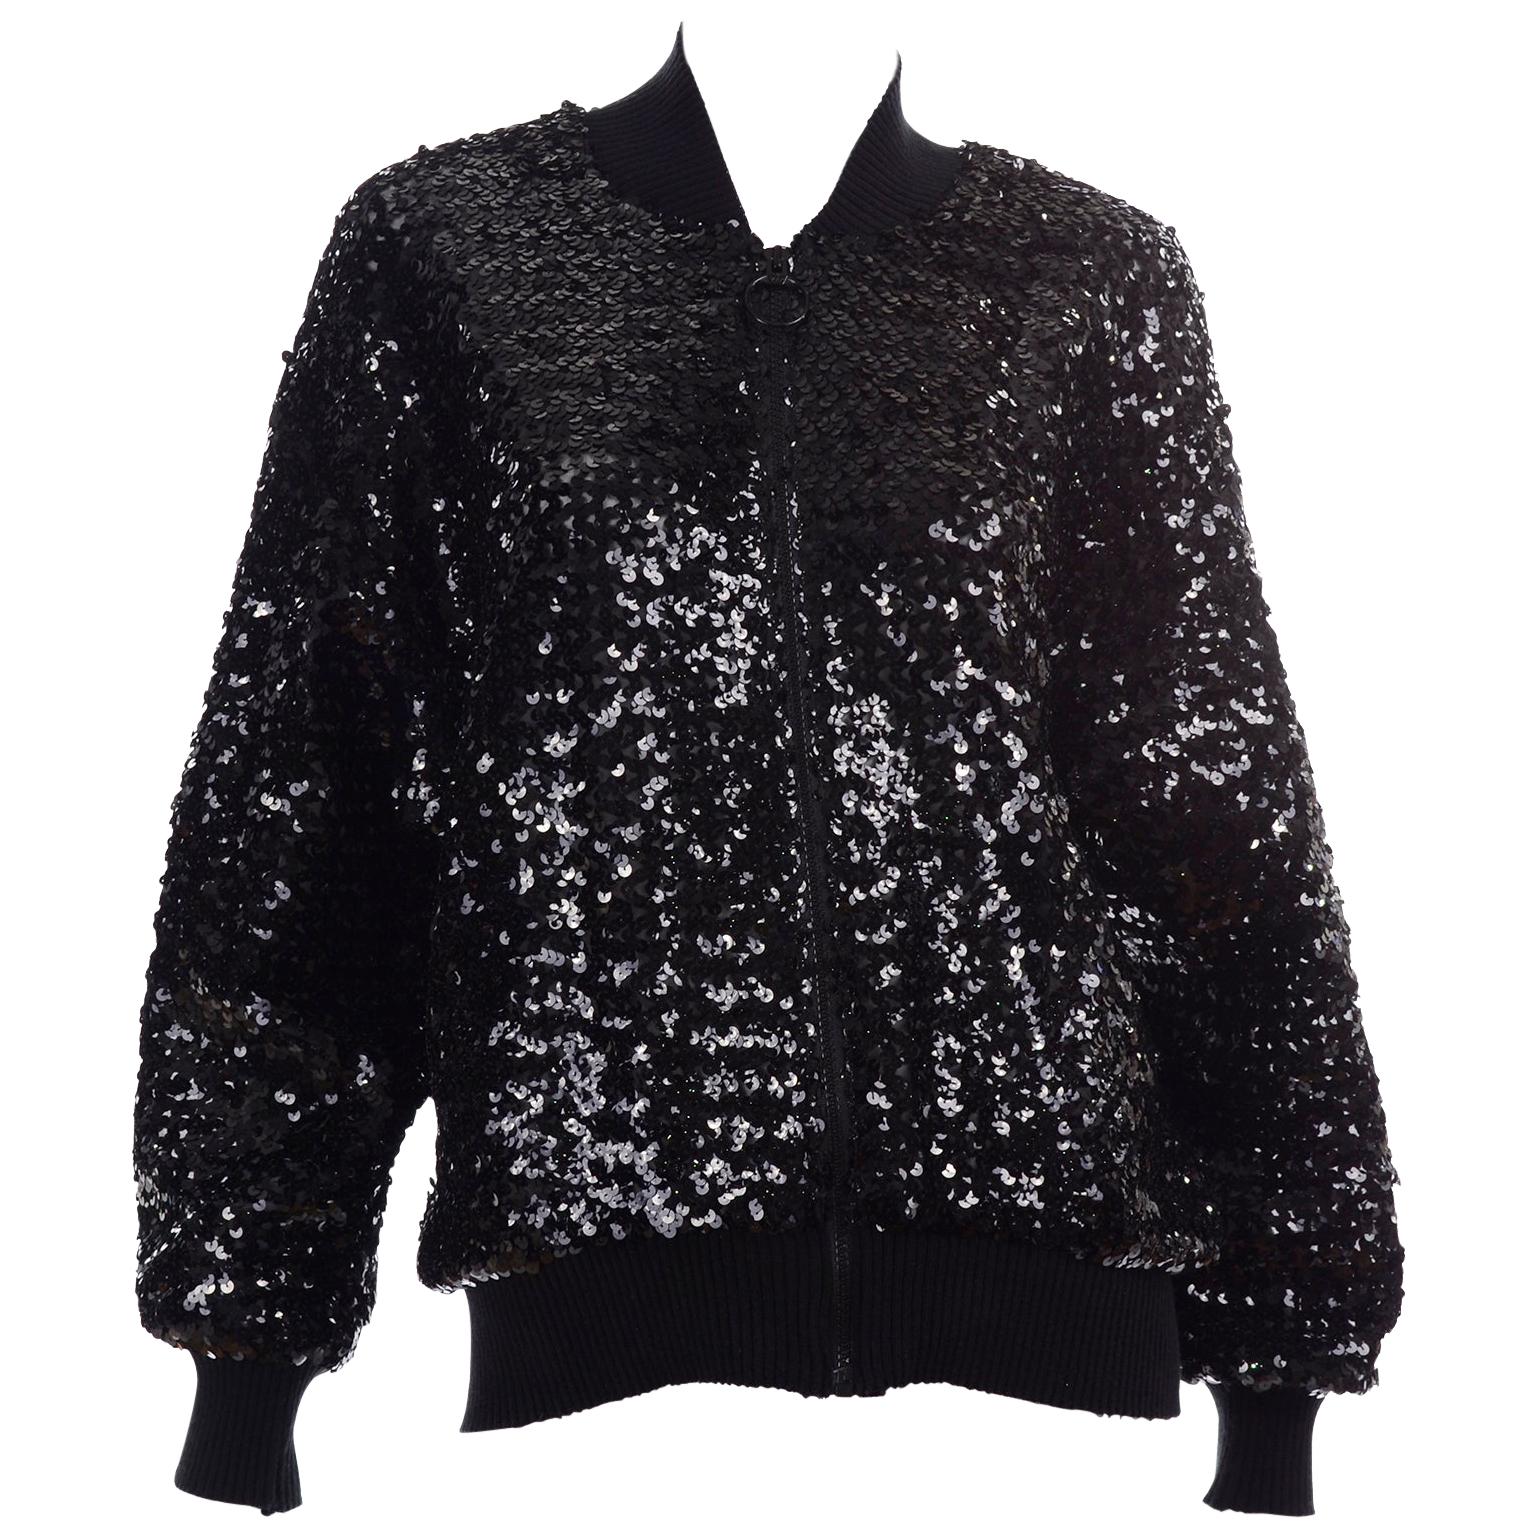 1980s Caron Vintage Black Sequin Zip Front Sweatshirt Style Jacket Top